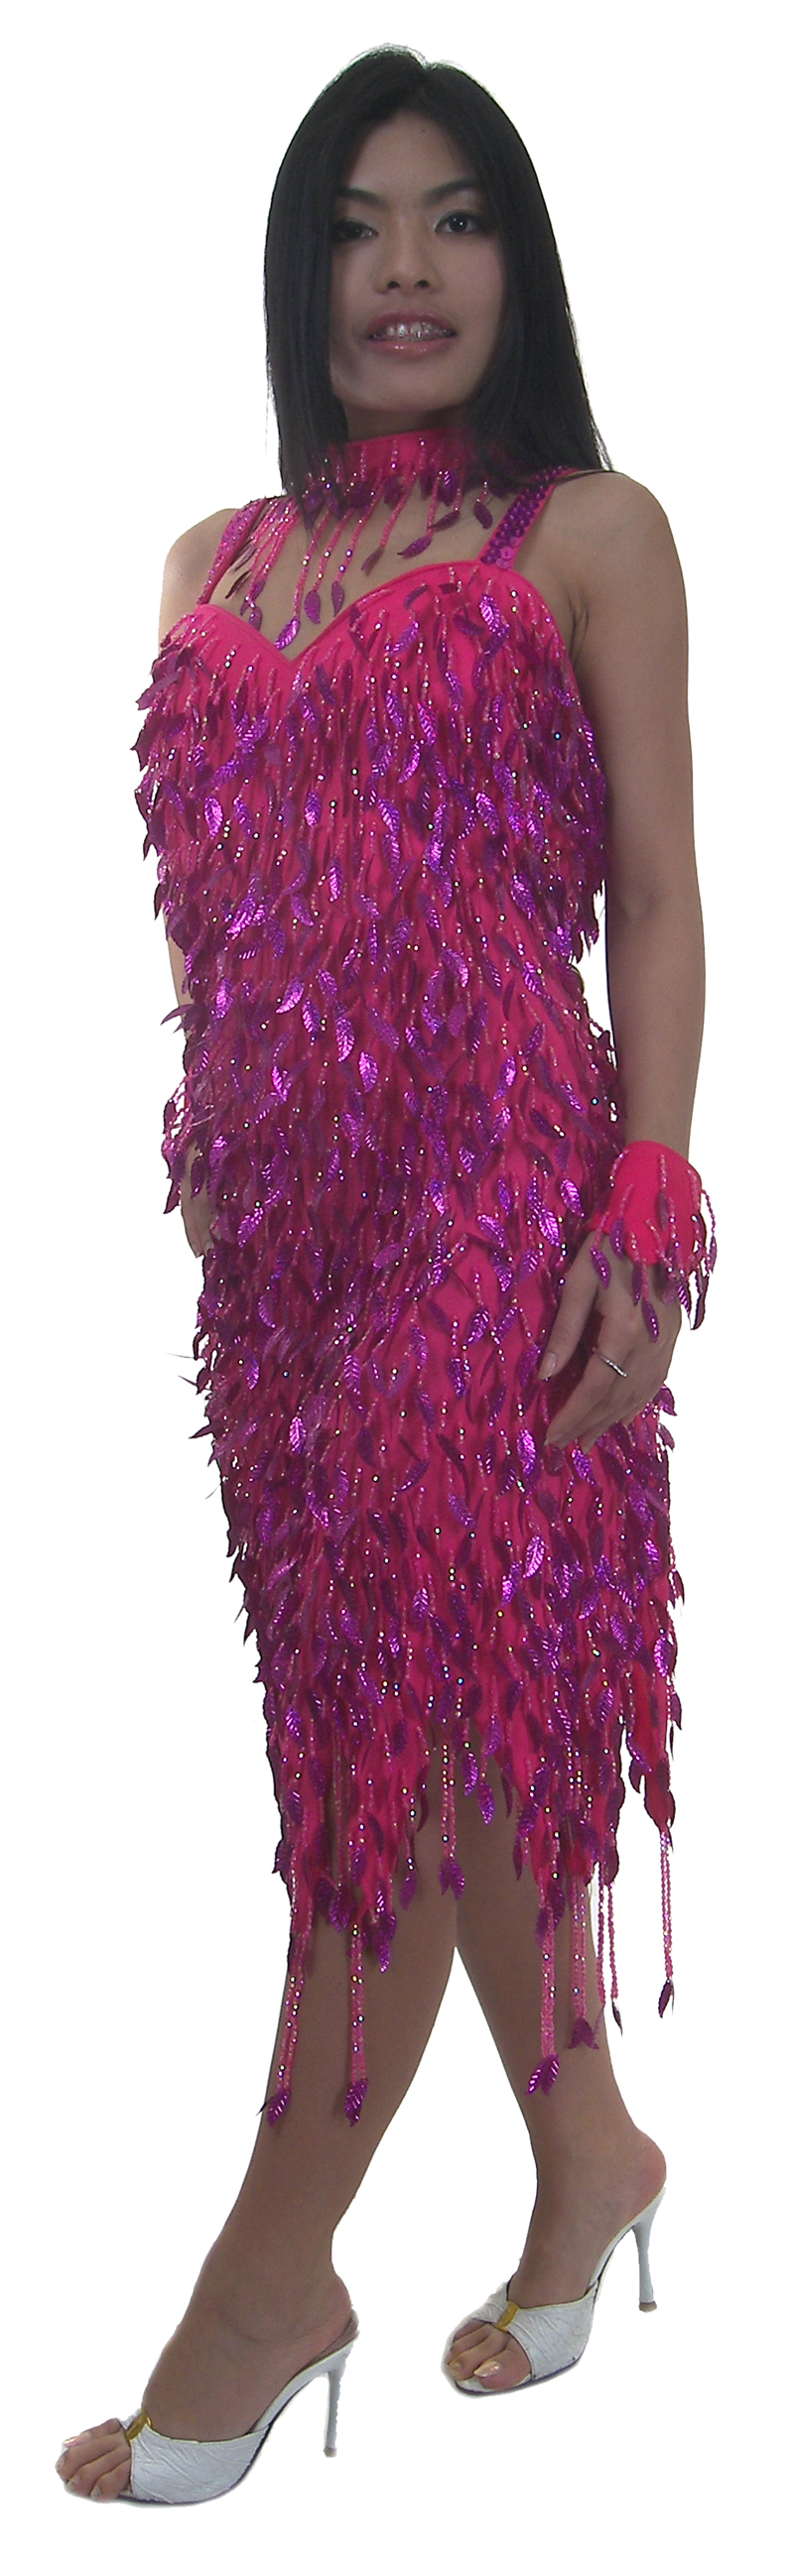 https://michaeljacksoncelebrityclothing.com/new-dress-designs/TM1006-short-sequin-fringe-latin-dress.jpg